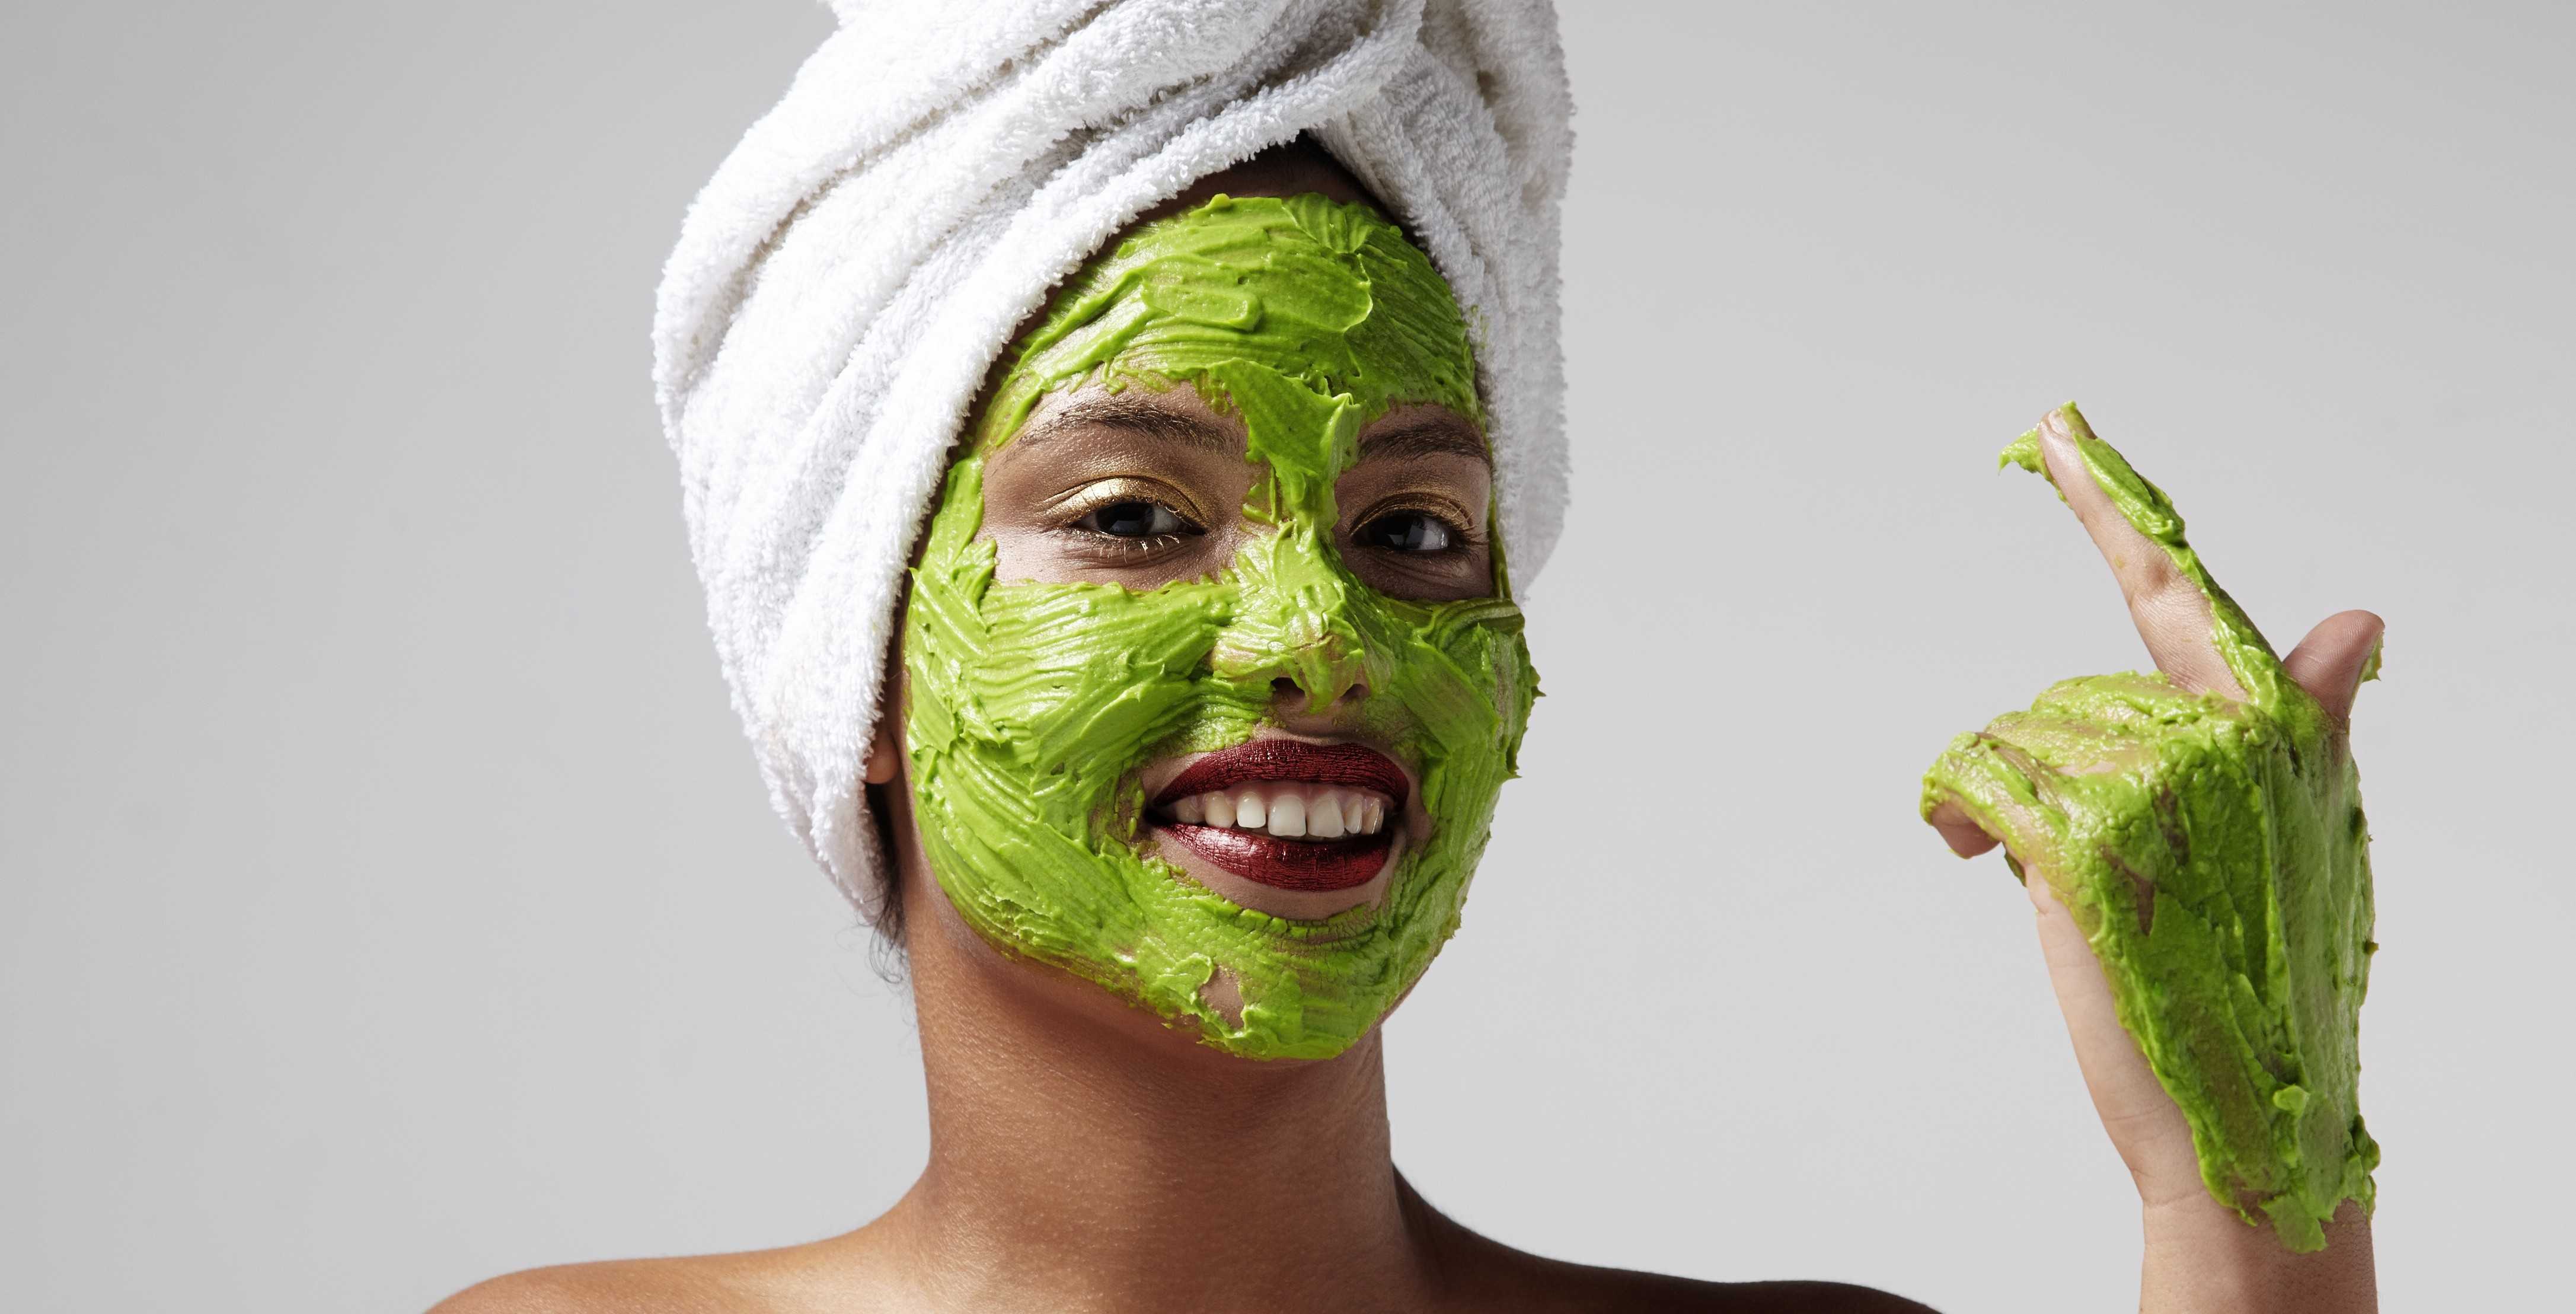 Маска для лица s. Маска Avocado face Mask. Девушка с маской на лице. Маска для лица/зеленая. Зеленая маска косметическая для лица.